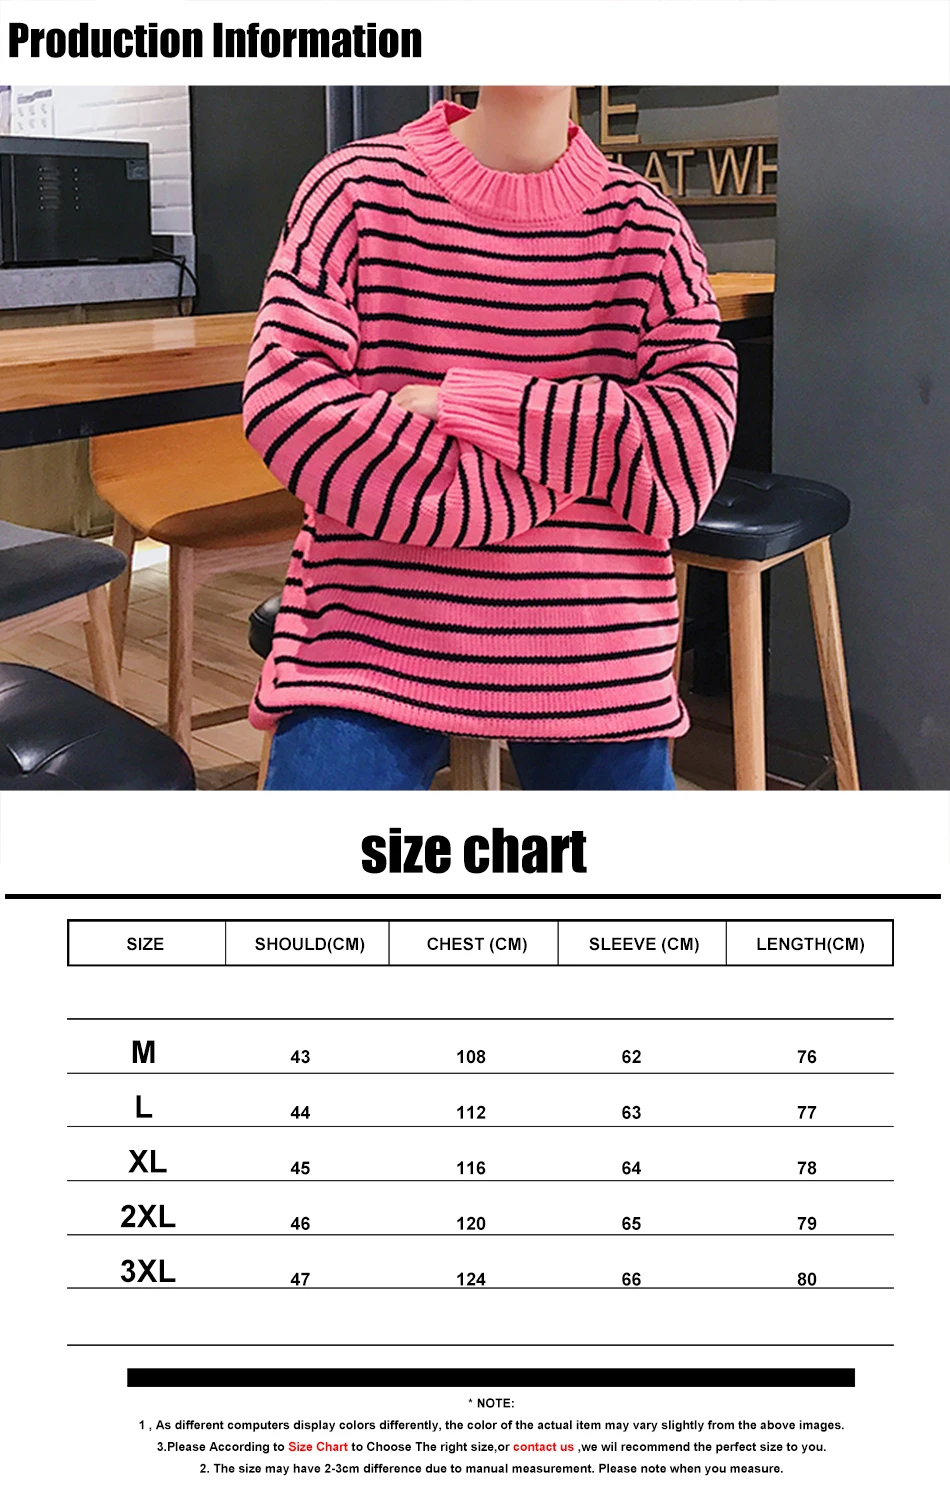 LAPPSTER мужской Корейский модный осенний полосатый свитер мужской s красочный пуловер уличная Свитера Пара черная одежда больших размеров